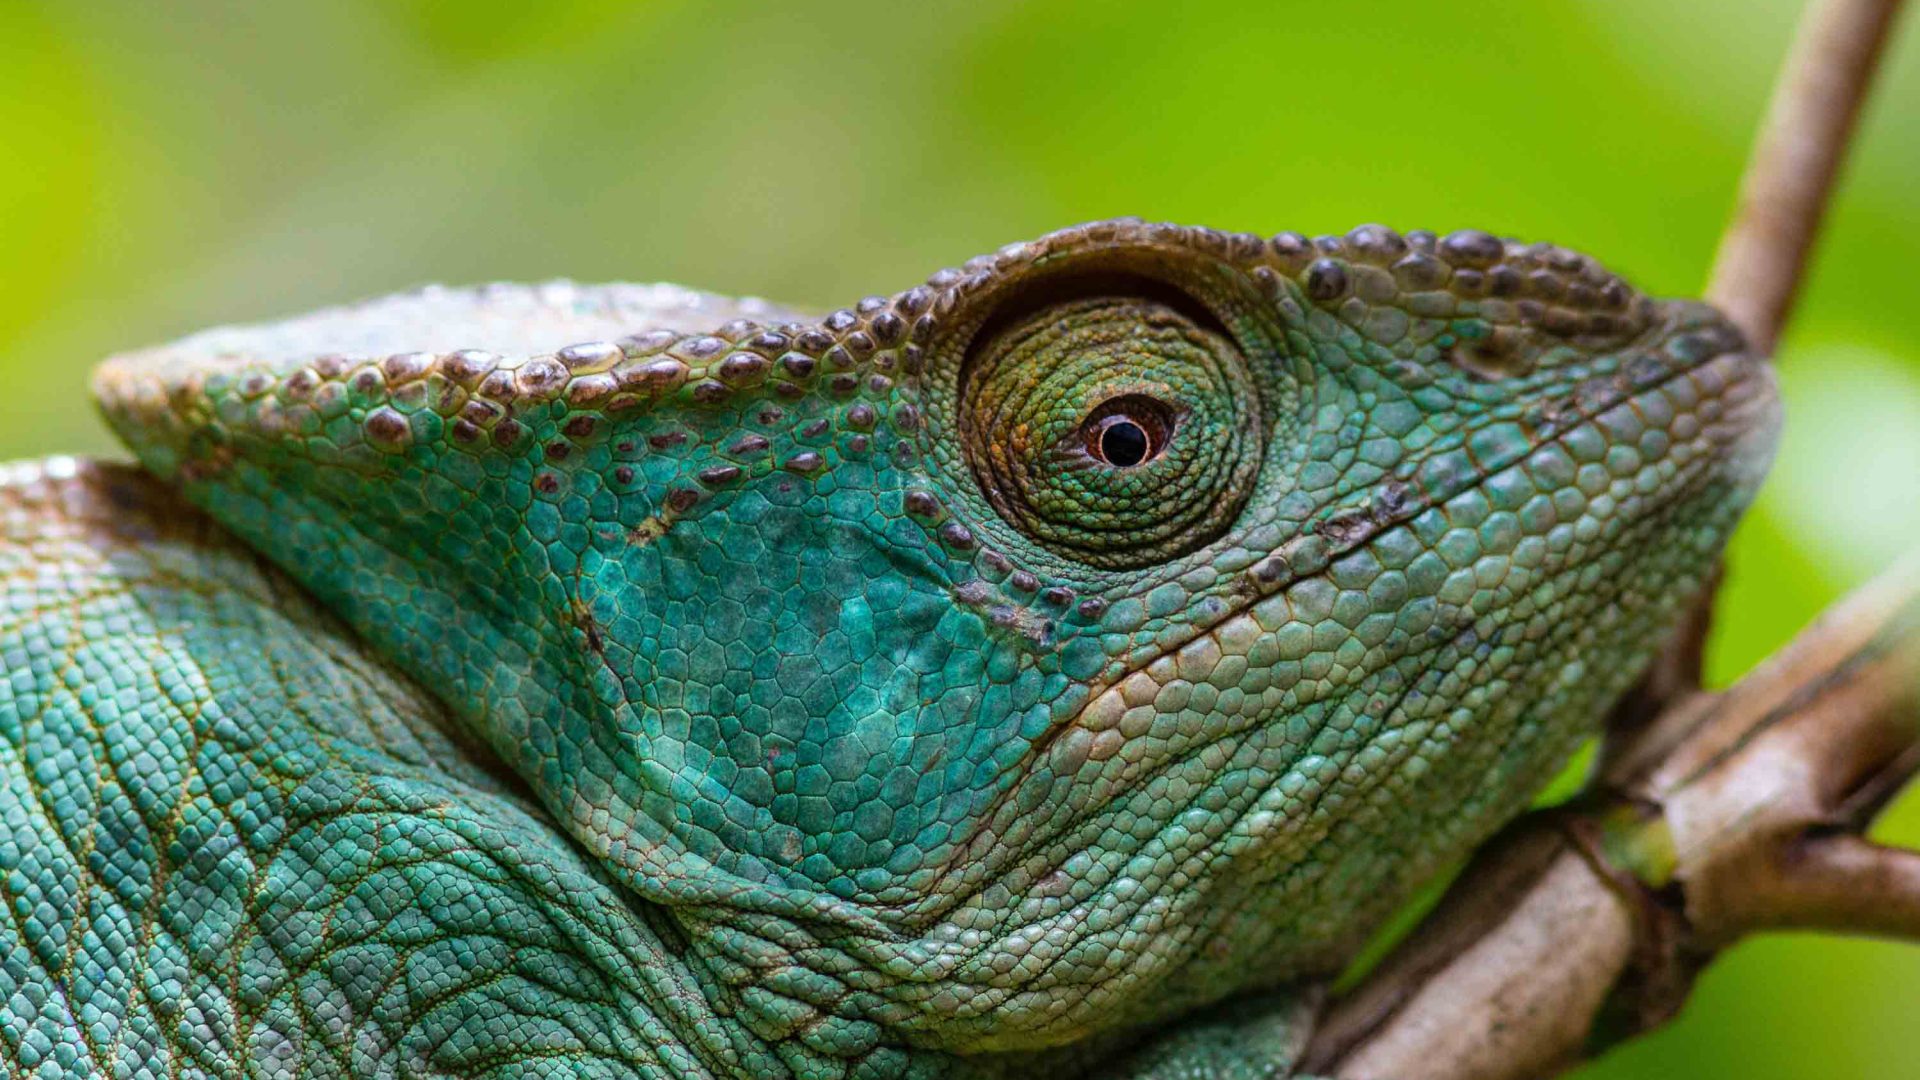 A green reptile.